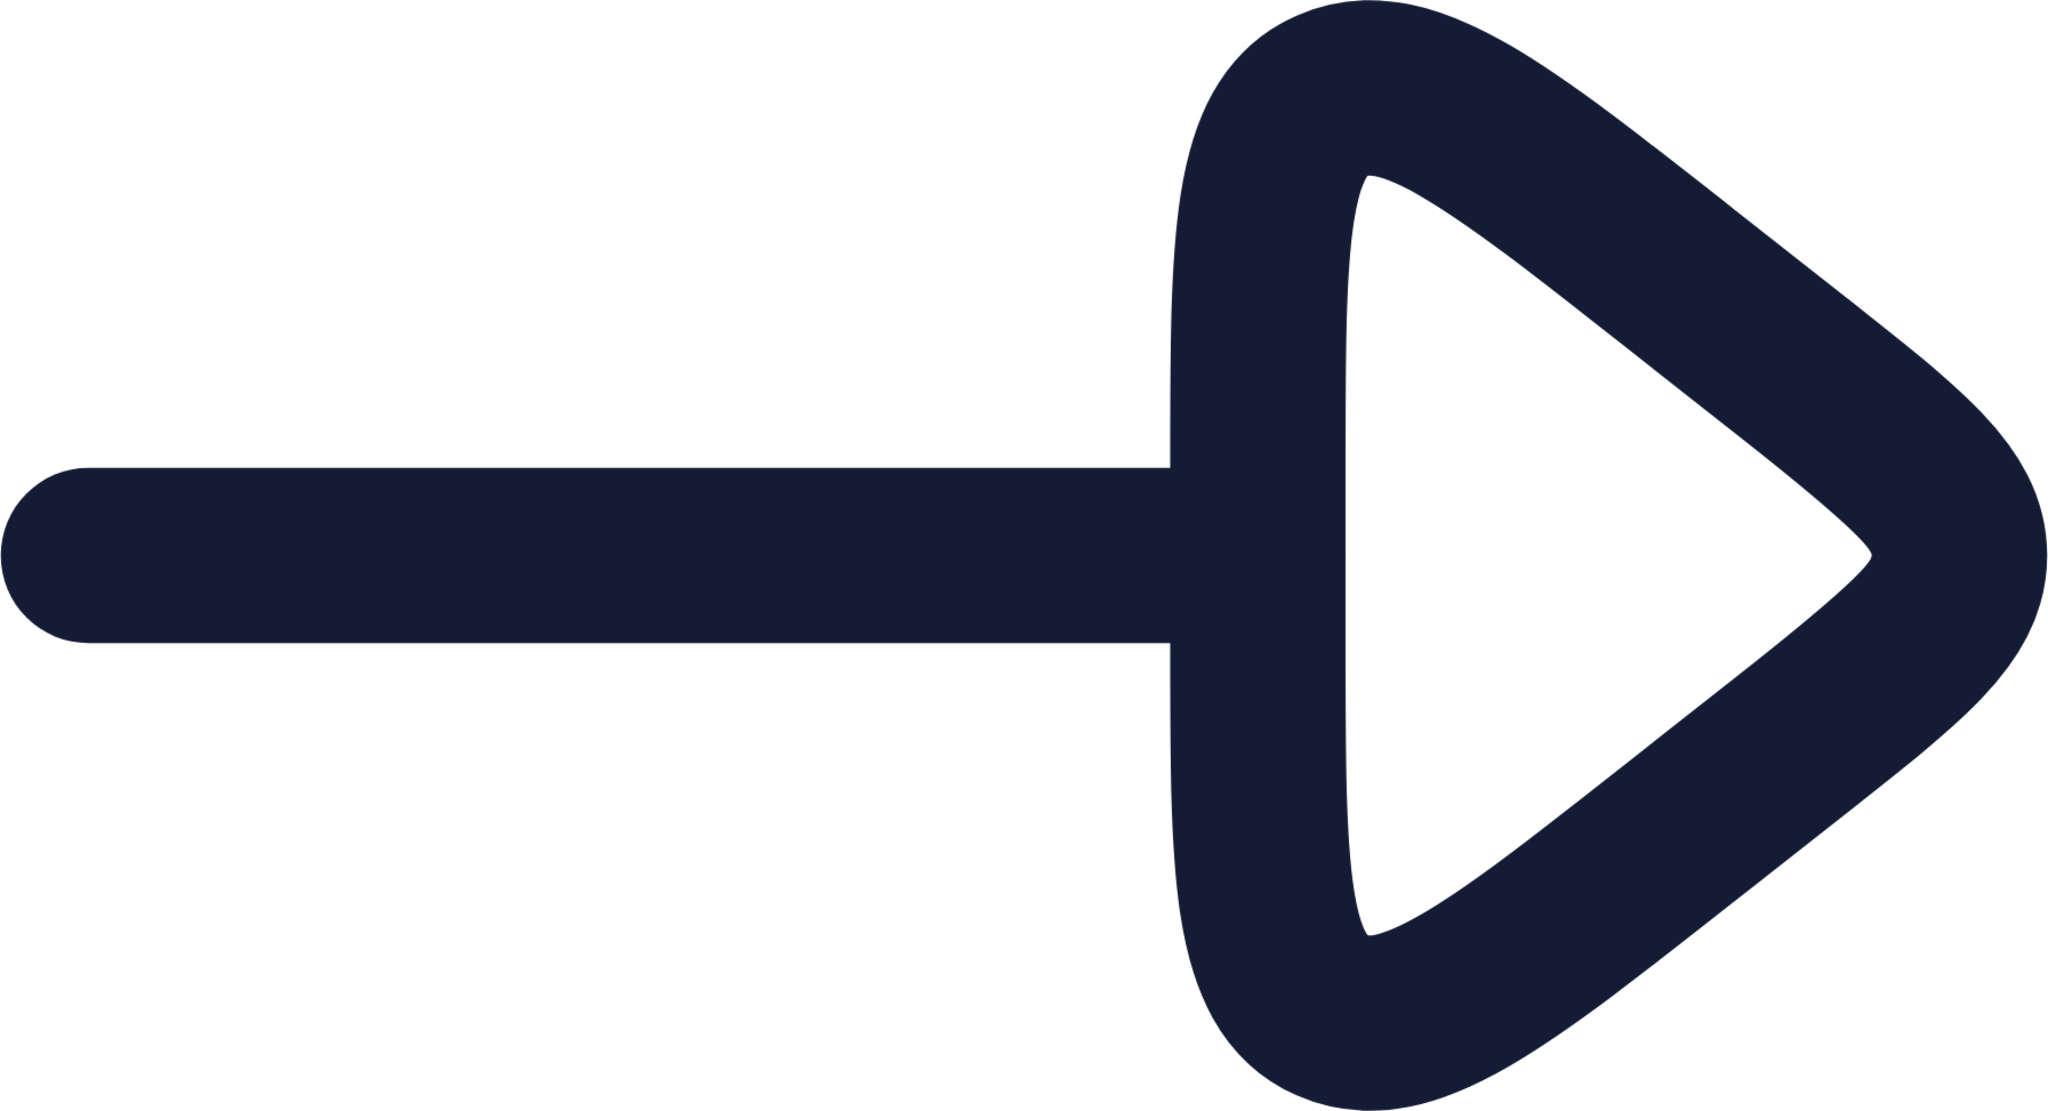 arrow right icon